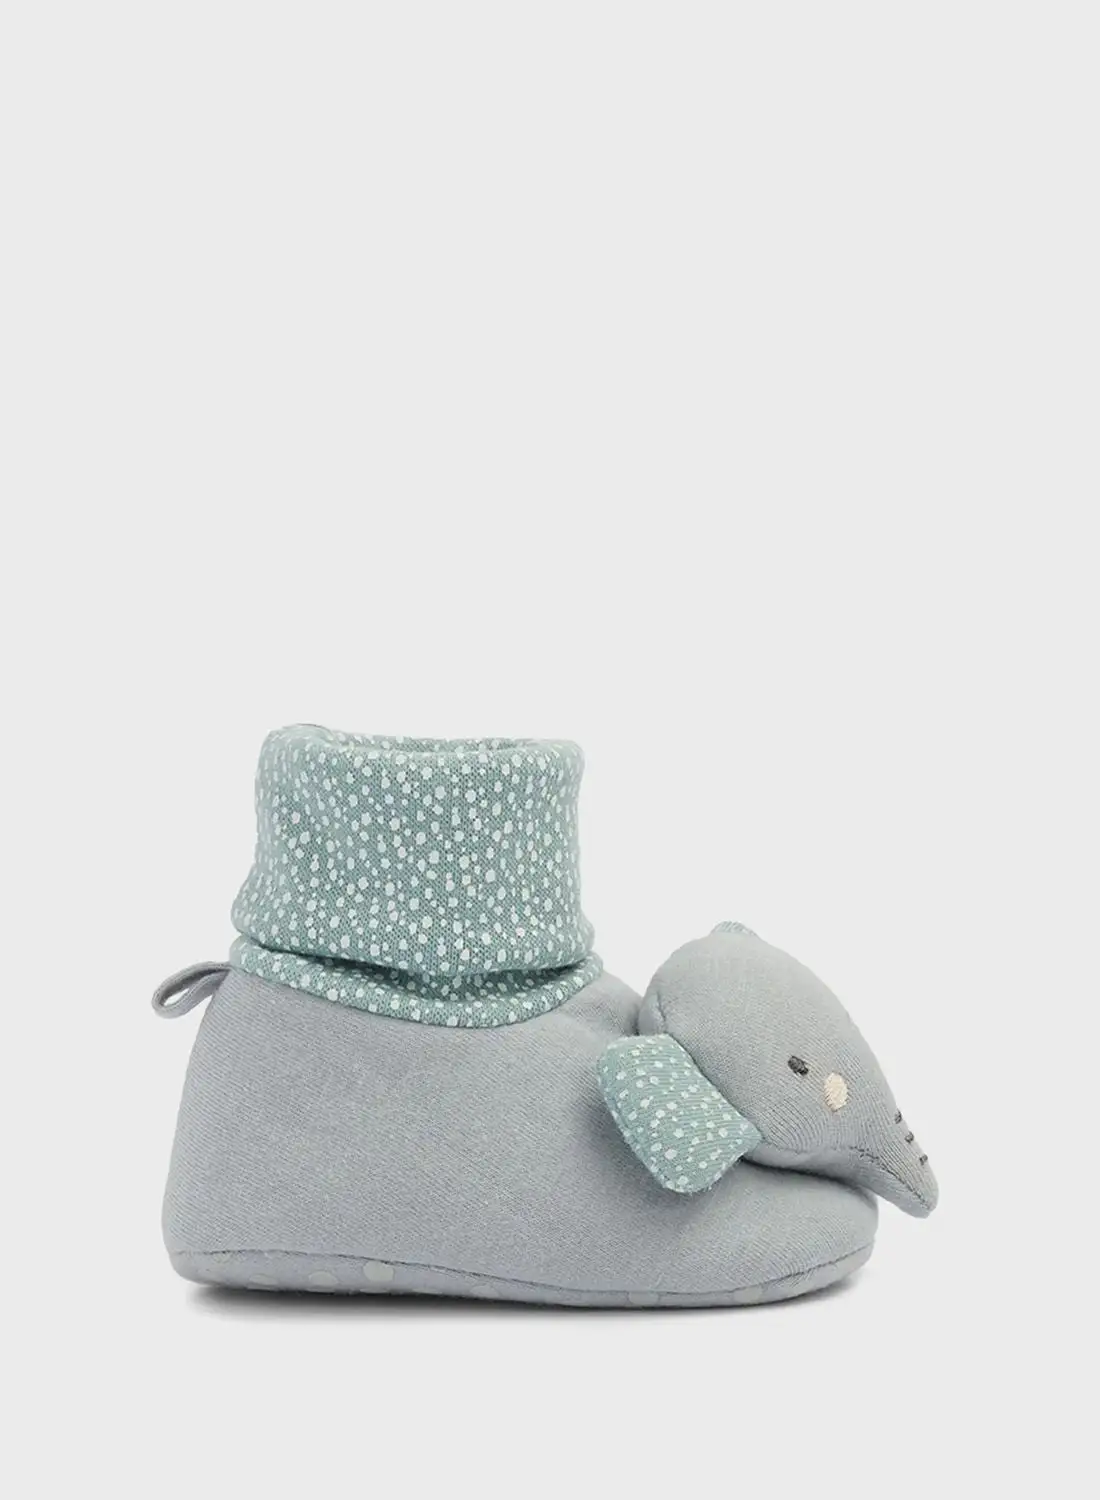 mothercare Elephant Rattle Sock Booties